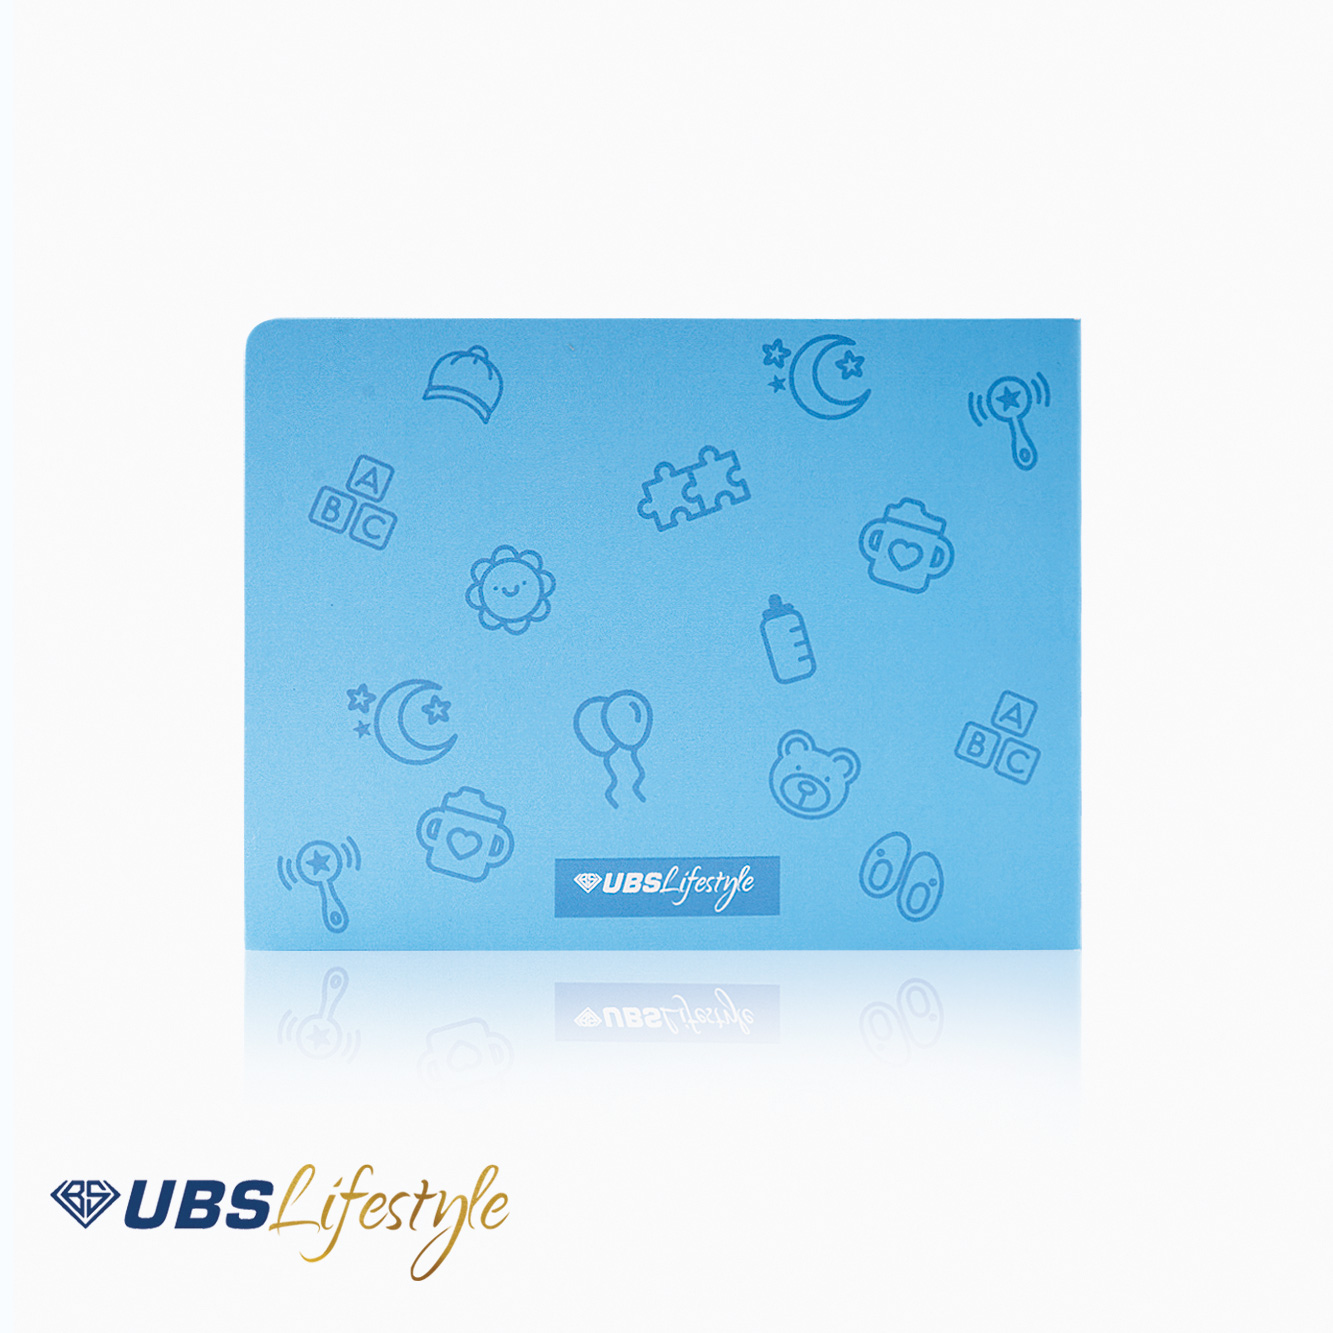 Kartu Ucapan UBS Lifestyle Edisi Newborn Baby Boy - Yakkk0481